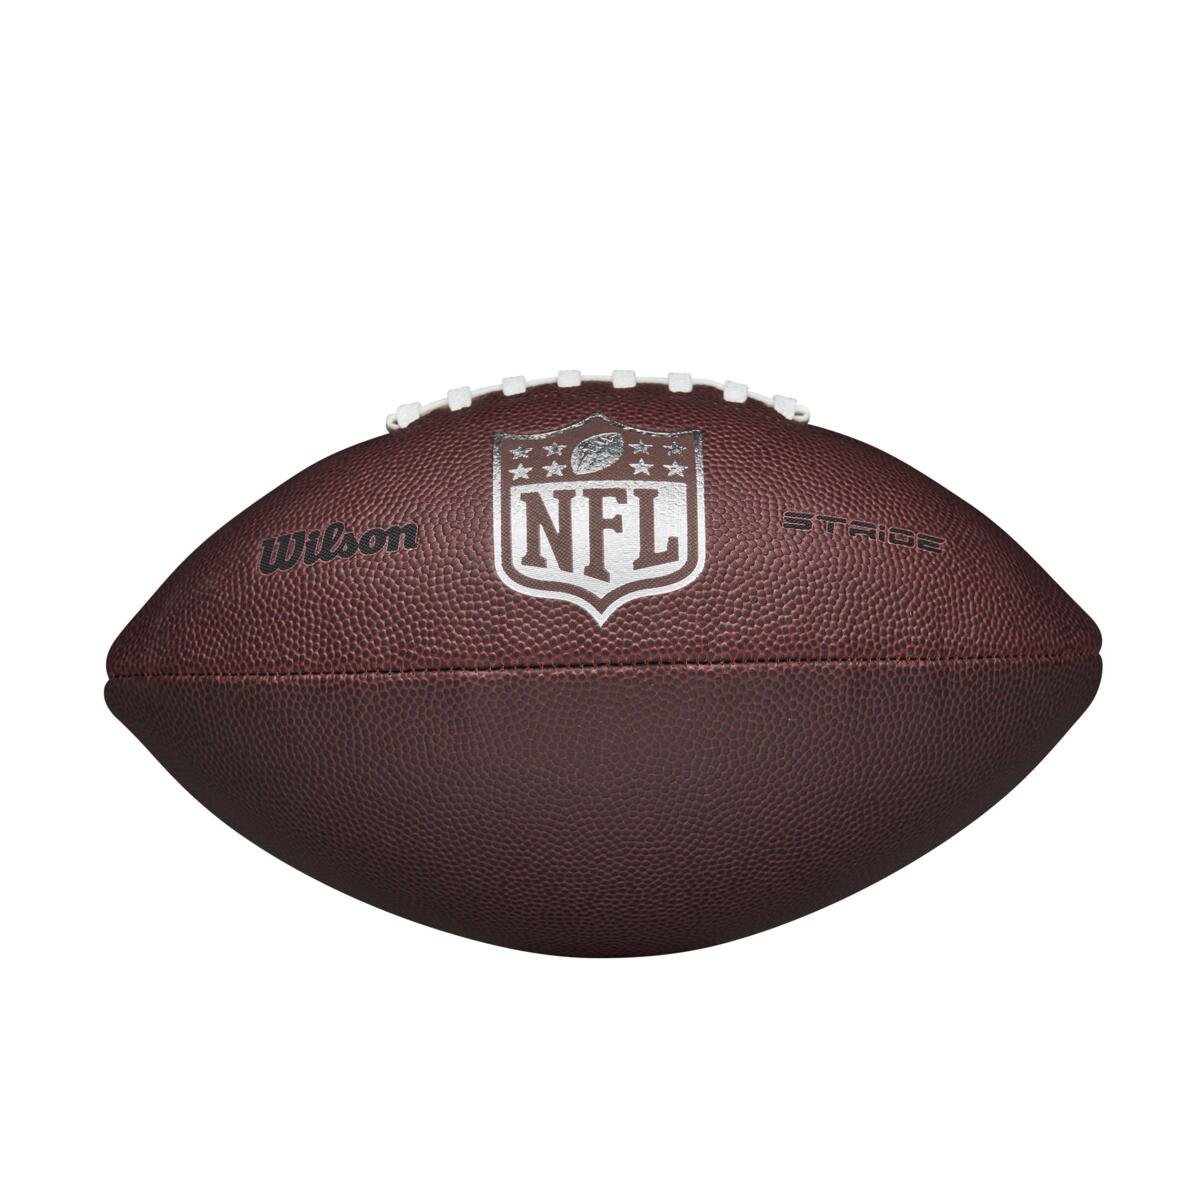 Lopta Wilson NFL Stride - hnedá